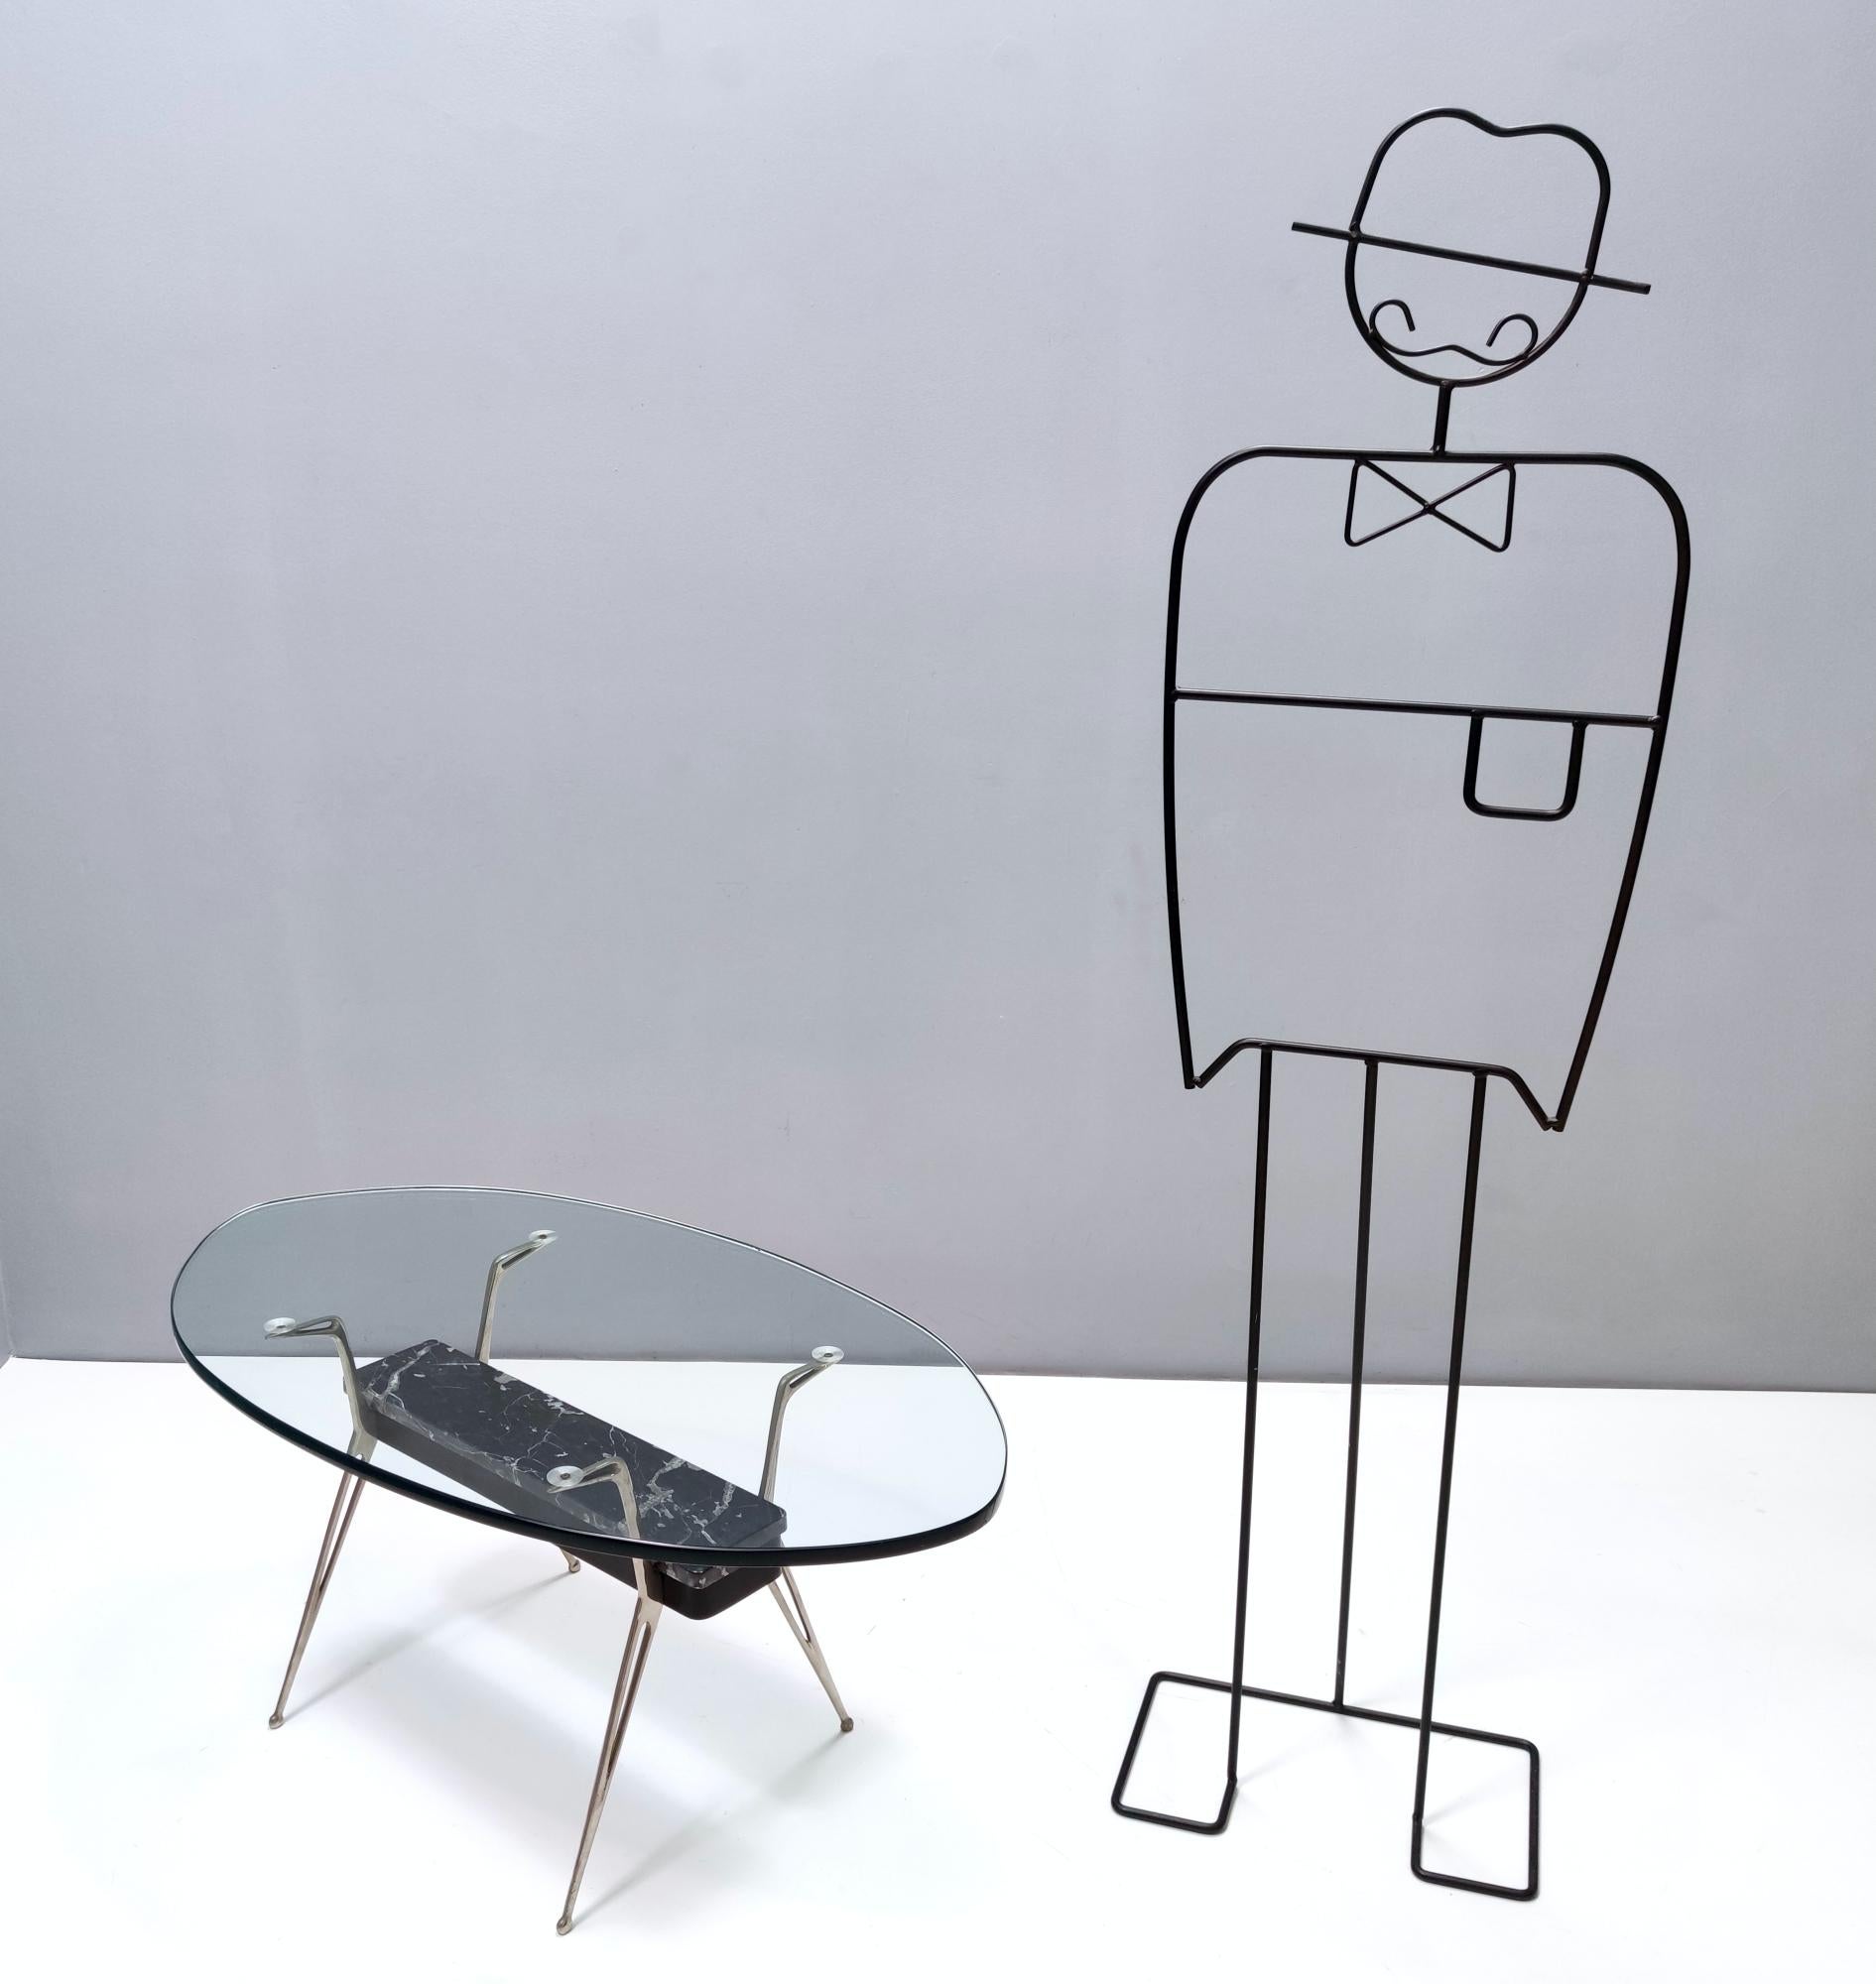 années 1950, Italie.
Son design nous rappelle le style de Parisi.
Cette table basse présente un plateau en verre de 17 millimètres d'épaisseur et un cadre en fer verni, laiton nickelé et marbre Portoro.
Il s'agit d'un article vintage, il peut